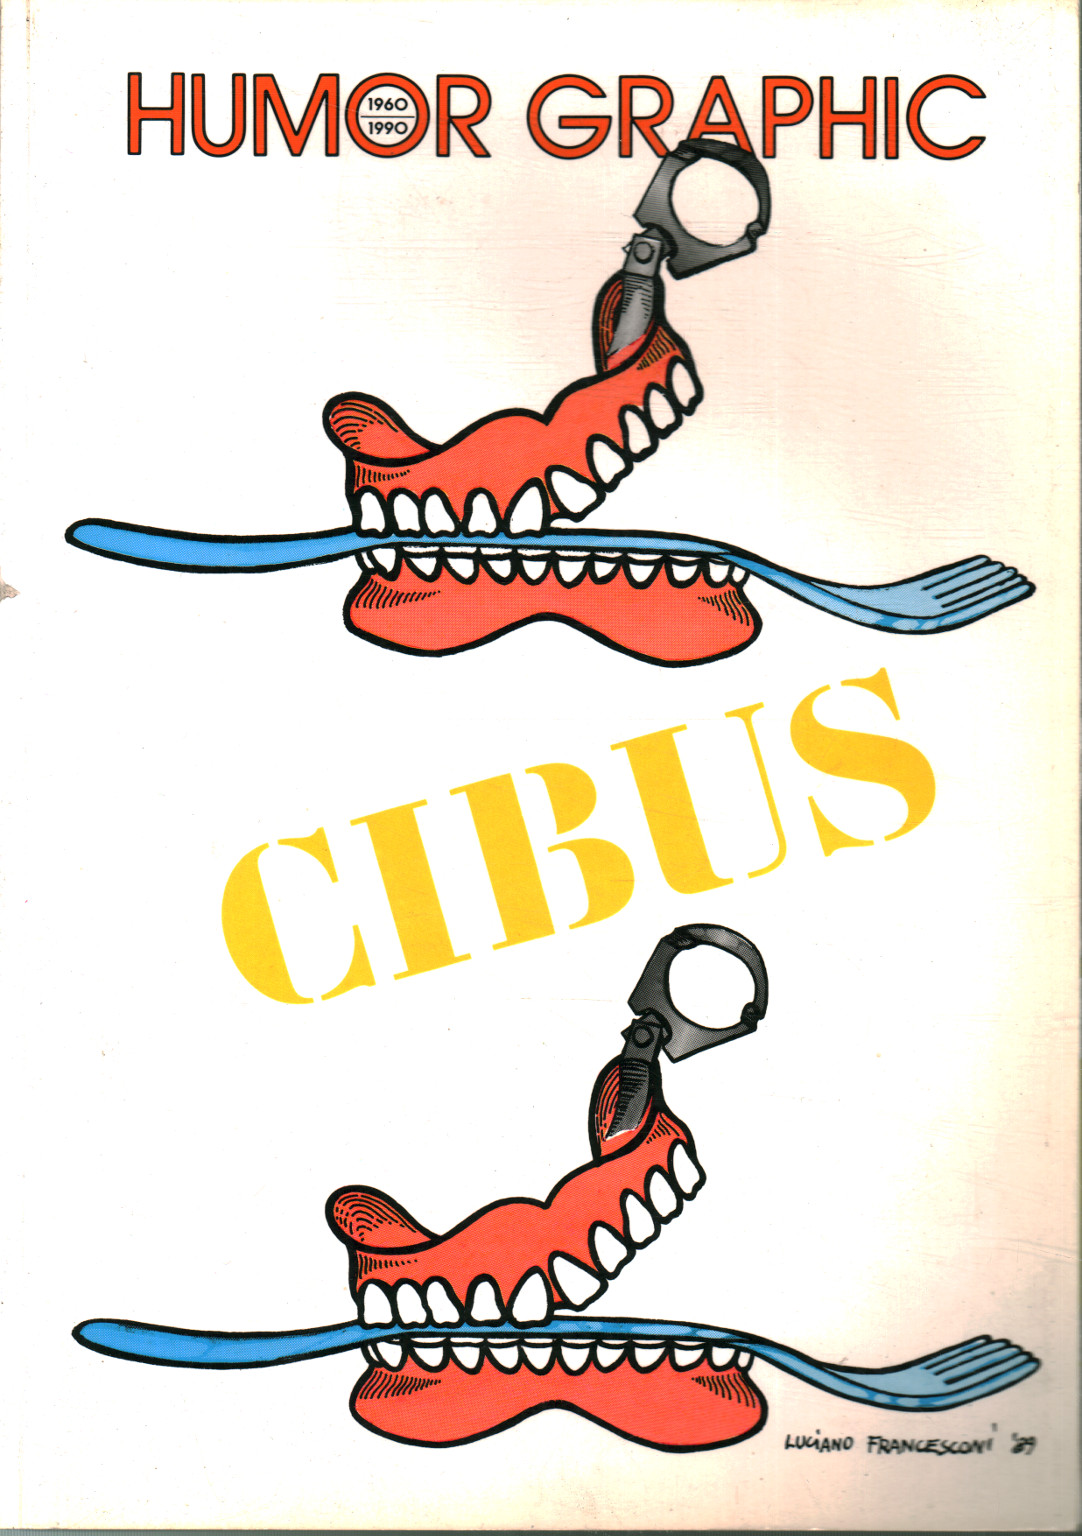 Humor Graphic (1960-1990 n. 29) Cibus,Humor Graphic (1960-1990 n.29) Cibus